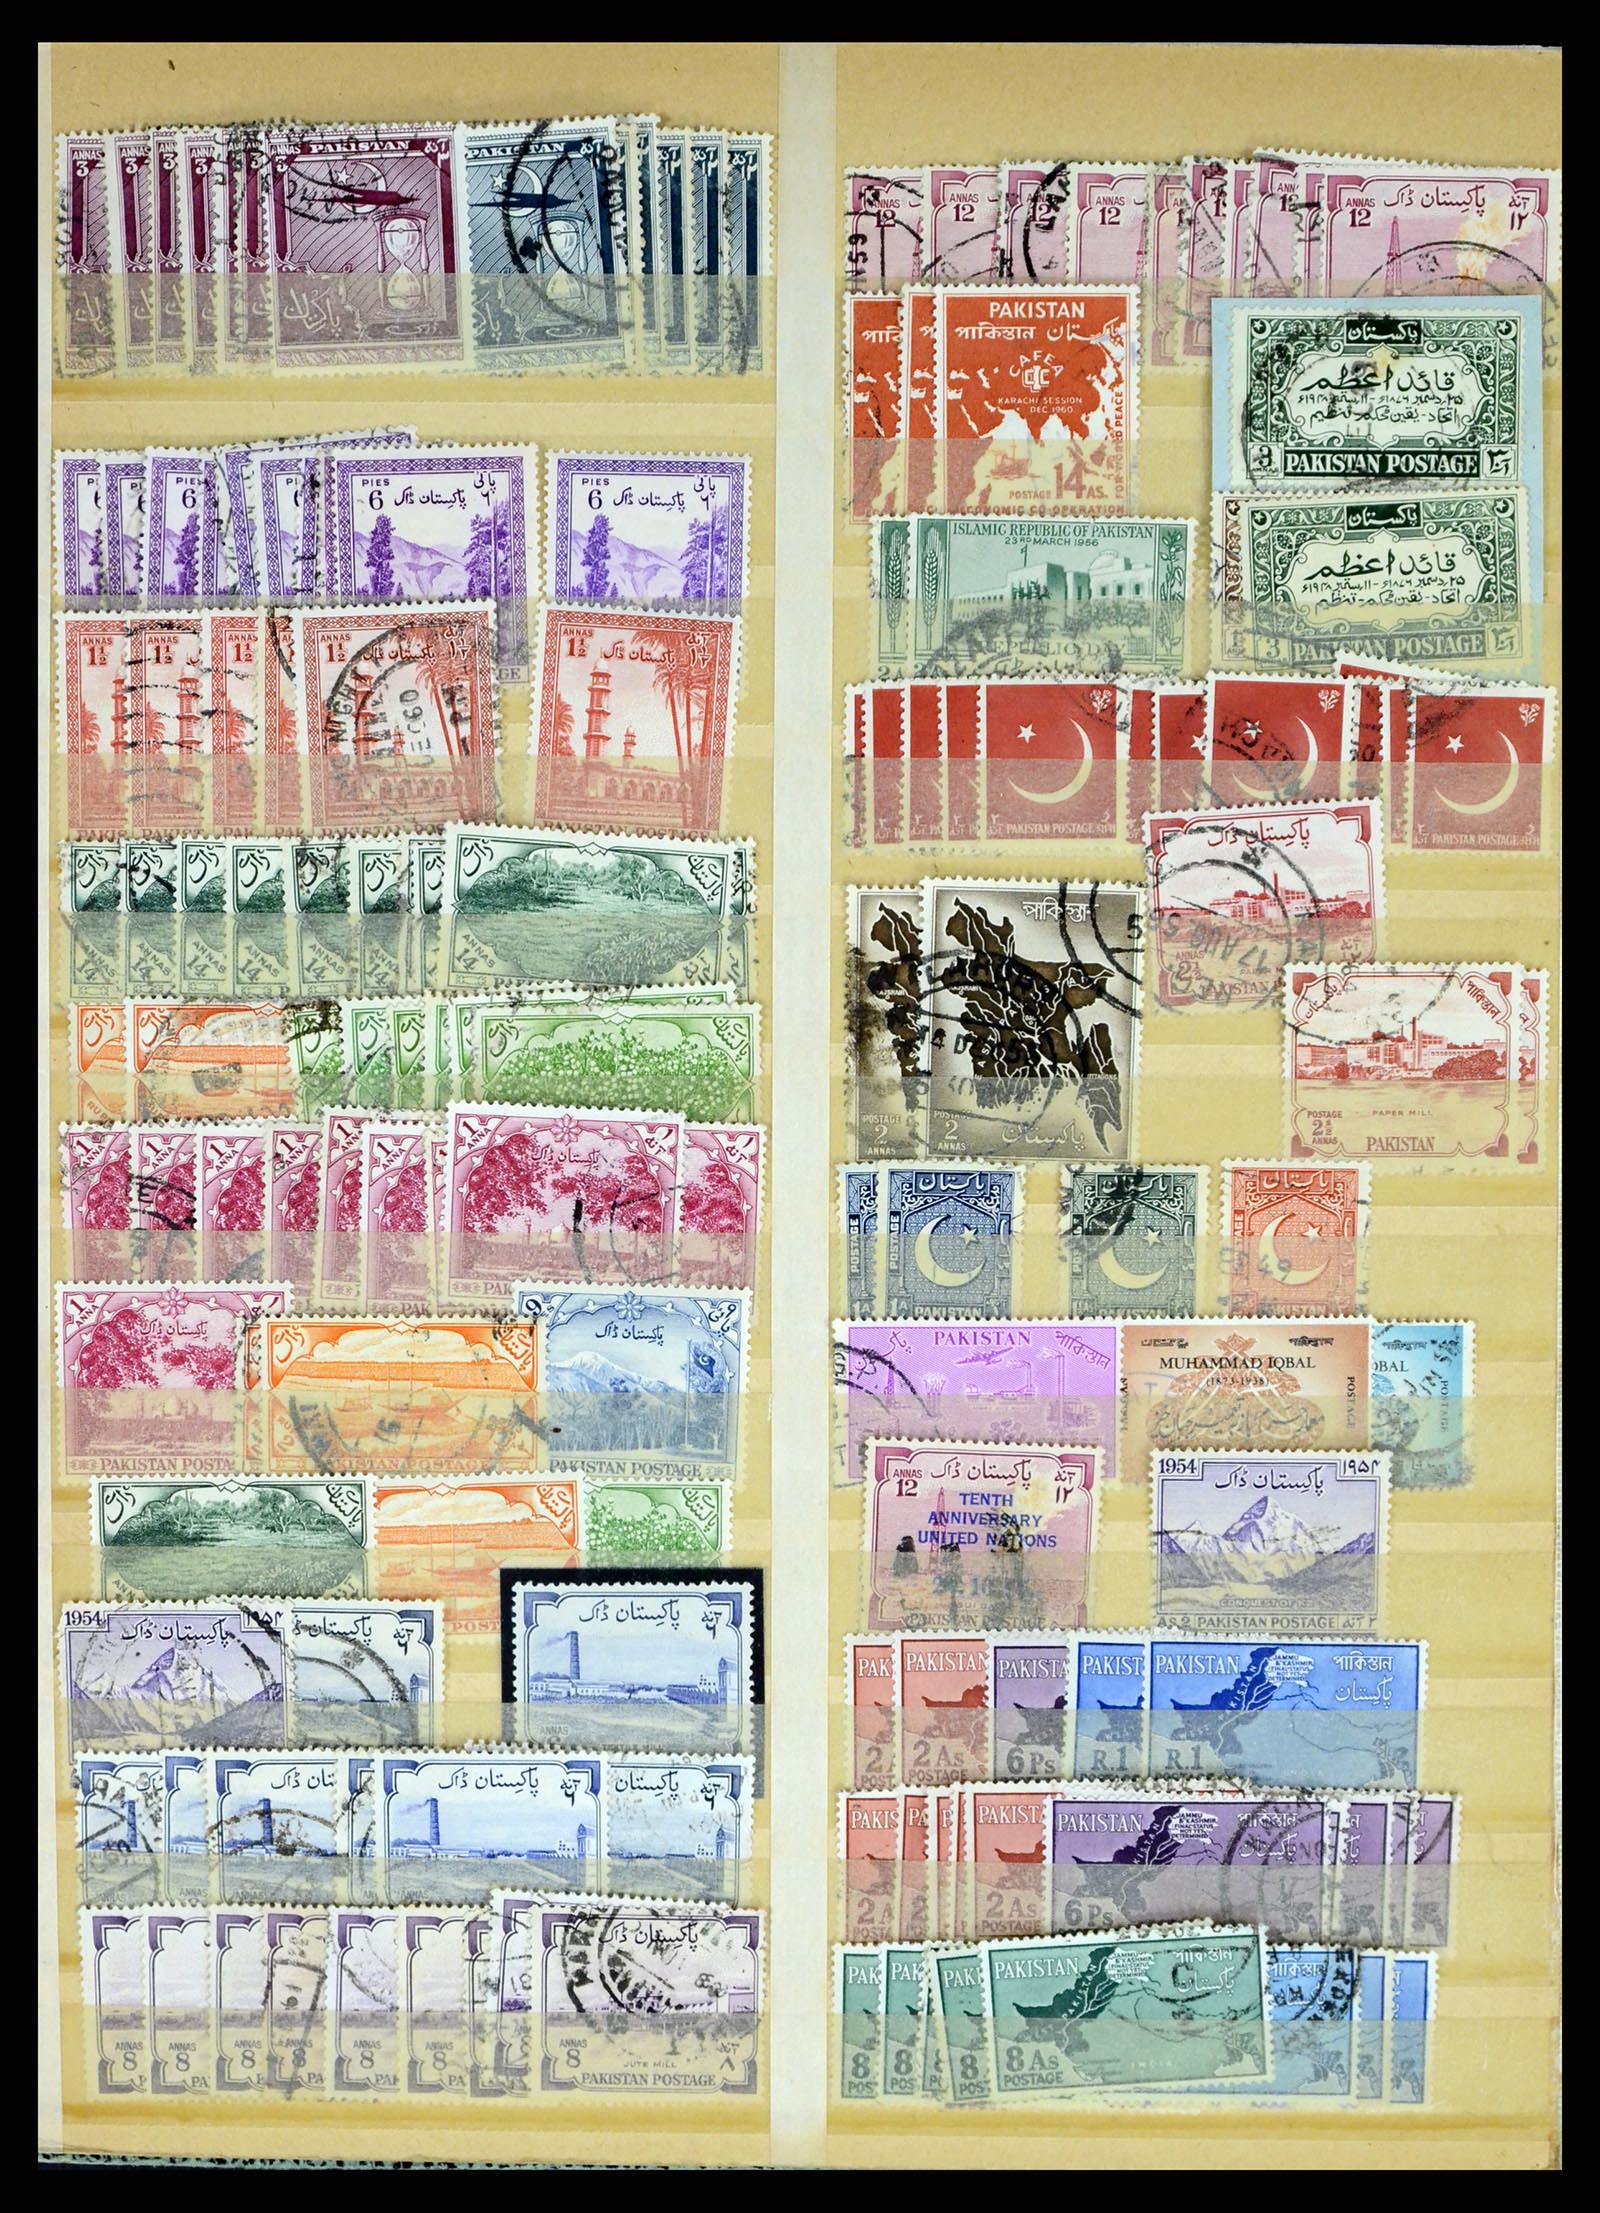 37619 323 - Stamp collection 37619 Pakistan/Bangladesh 1947-2000.